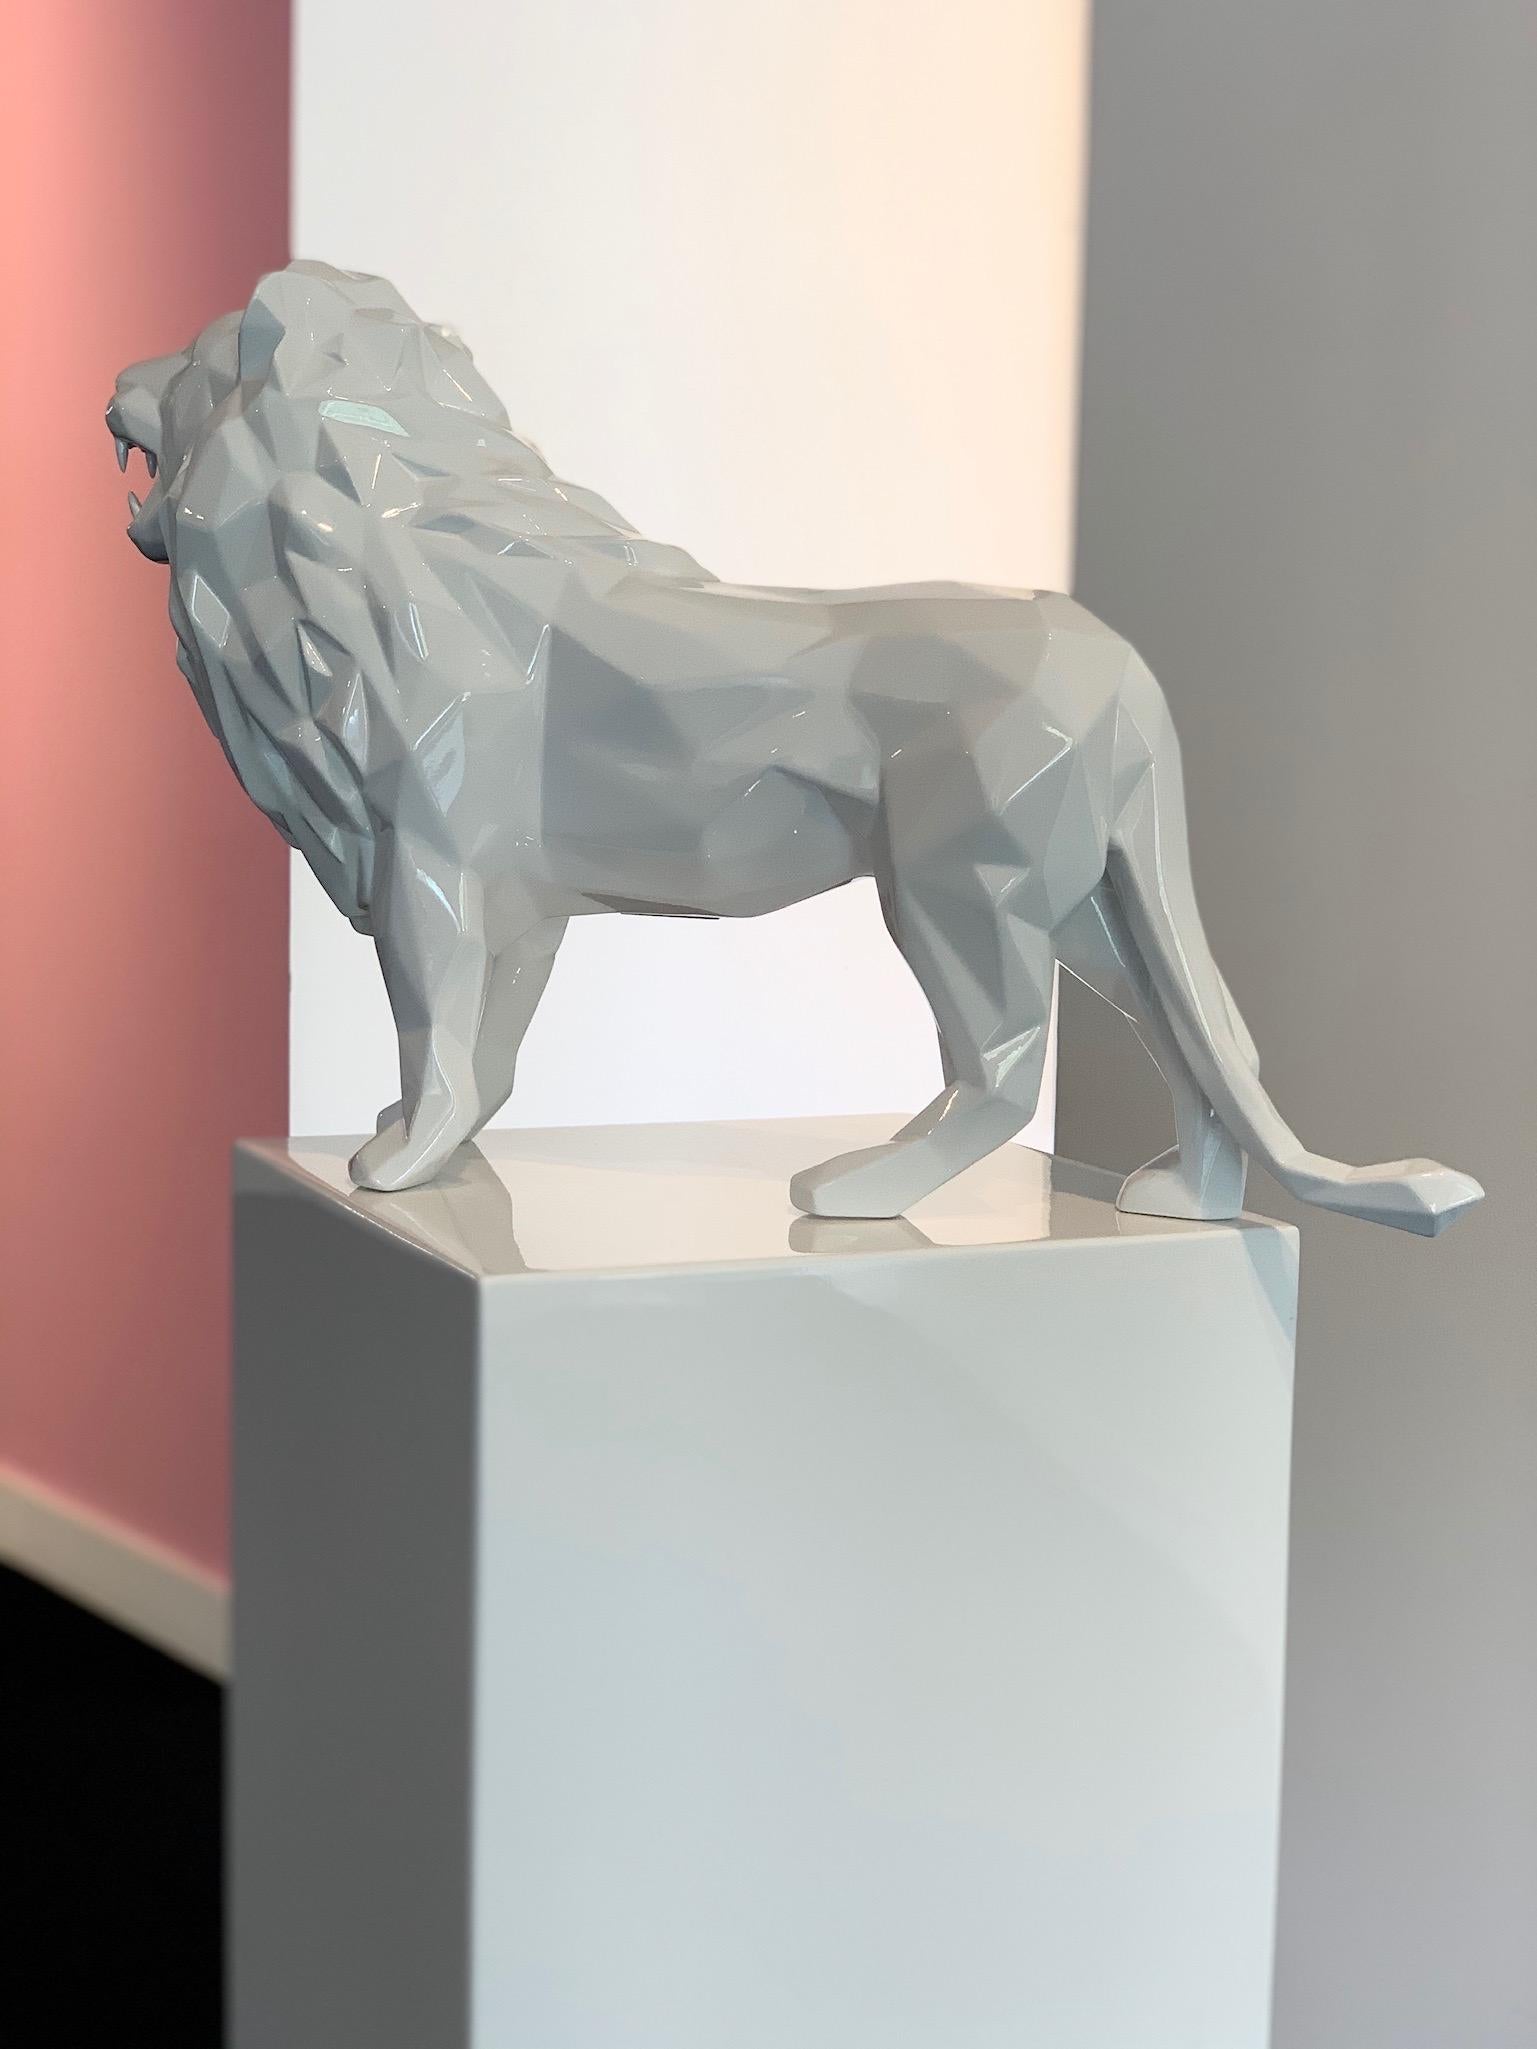 Richard Orlinski
Lion, blanc brillant
23.6 x 15 x 6.7 pouces
Sculpture en résine
Edition de 50
Signé et numéroté par l'artiste

Actuellement exposé à Art Angels Los Angeles



Sculpture de Richard Orlinski
Richard Orlinski
Sculpture de